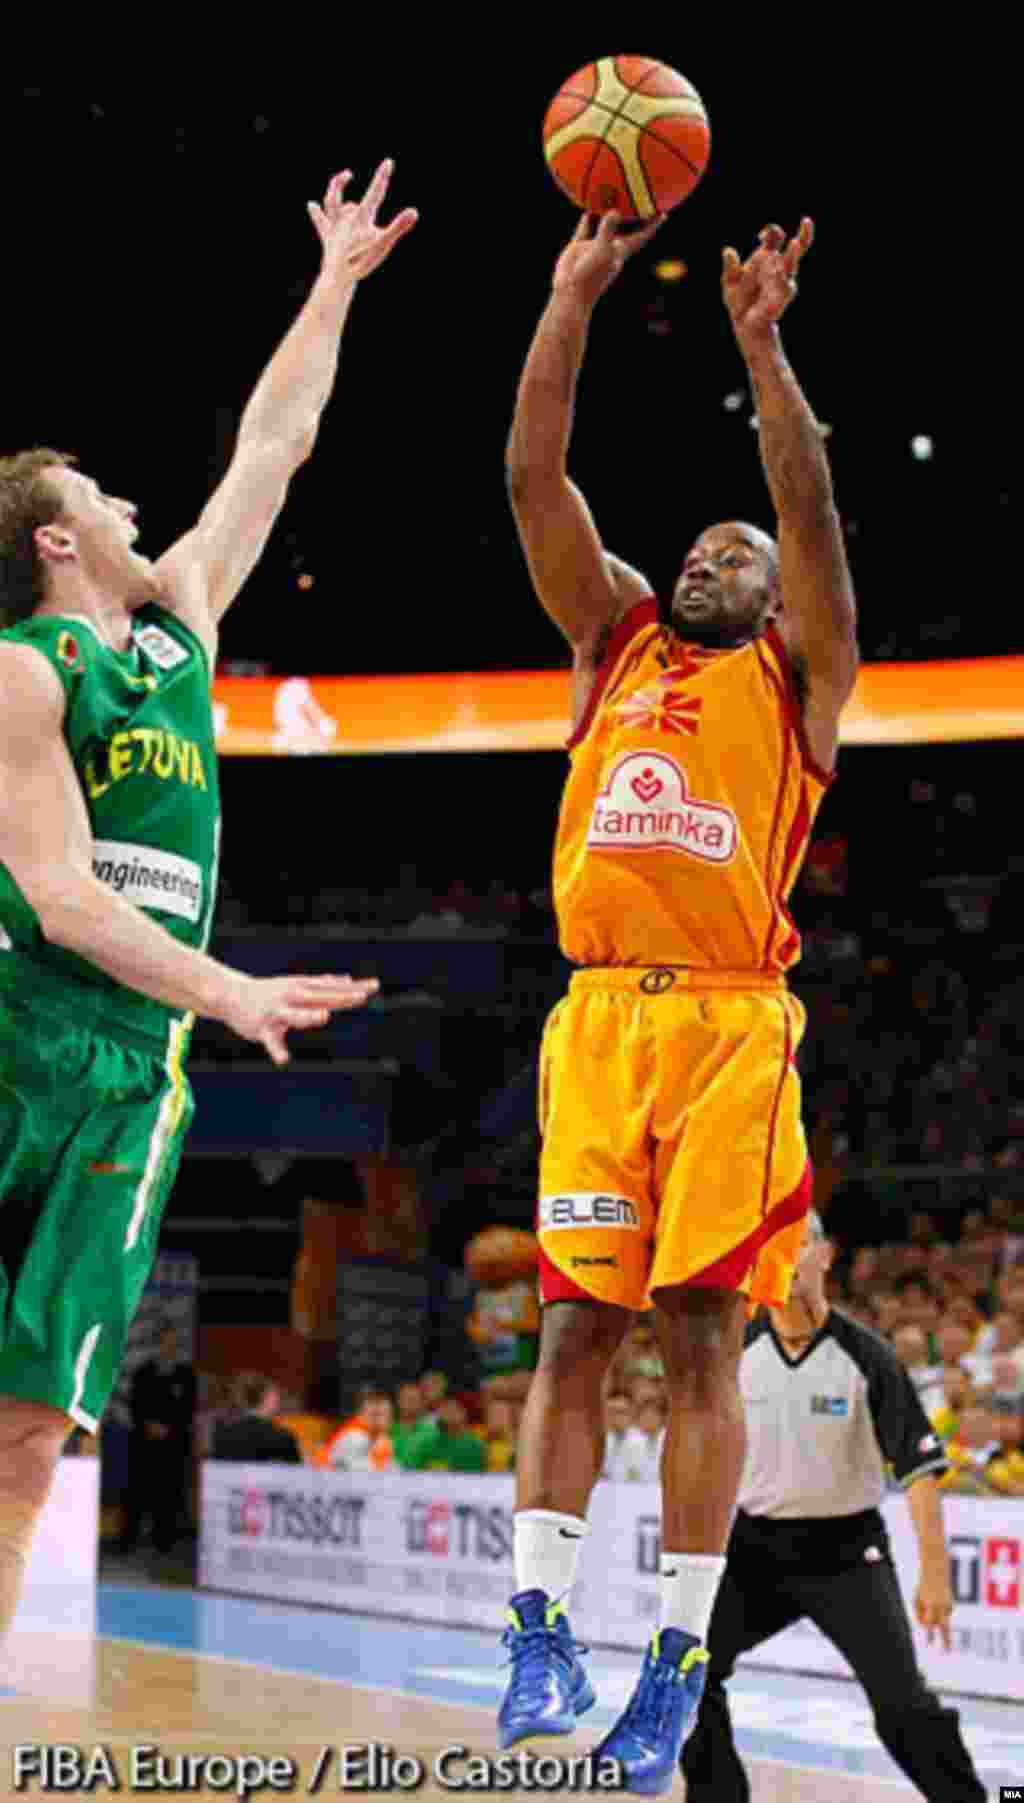 Македонија ја победи Литванија 67 - 65 во четвртфиналето на ЕП во кошарка во Литванија и обезбеди пласман во полуфиналето со Шпанија. Лестер Бо Мекејлеб.